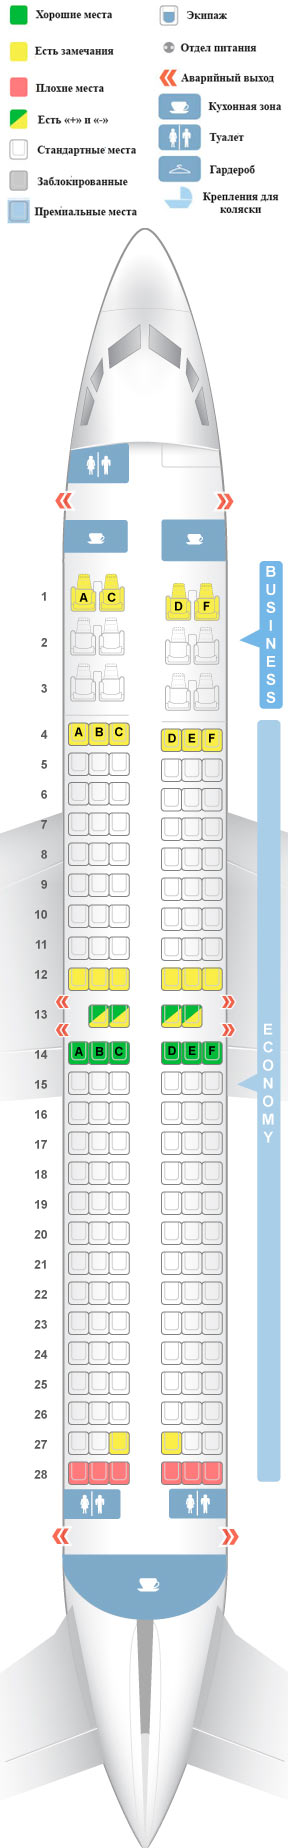 Боинг 737-800 S7 - схема салона и лучшие места